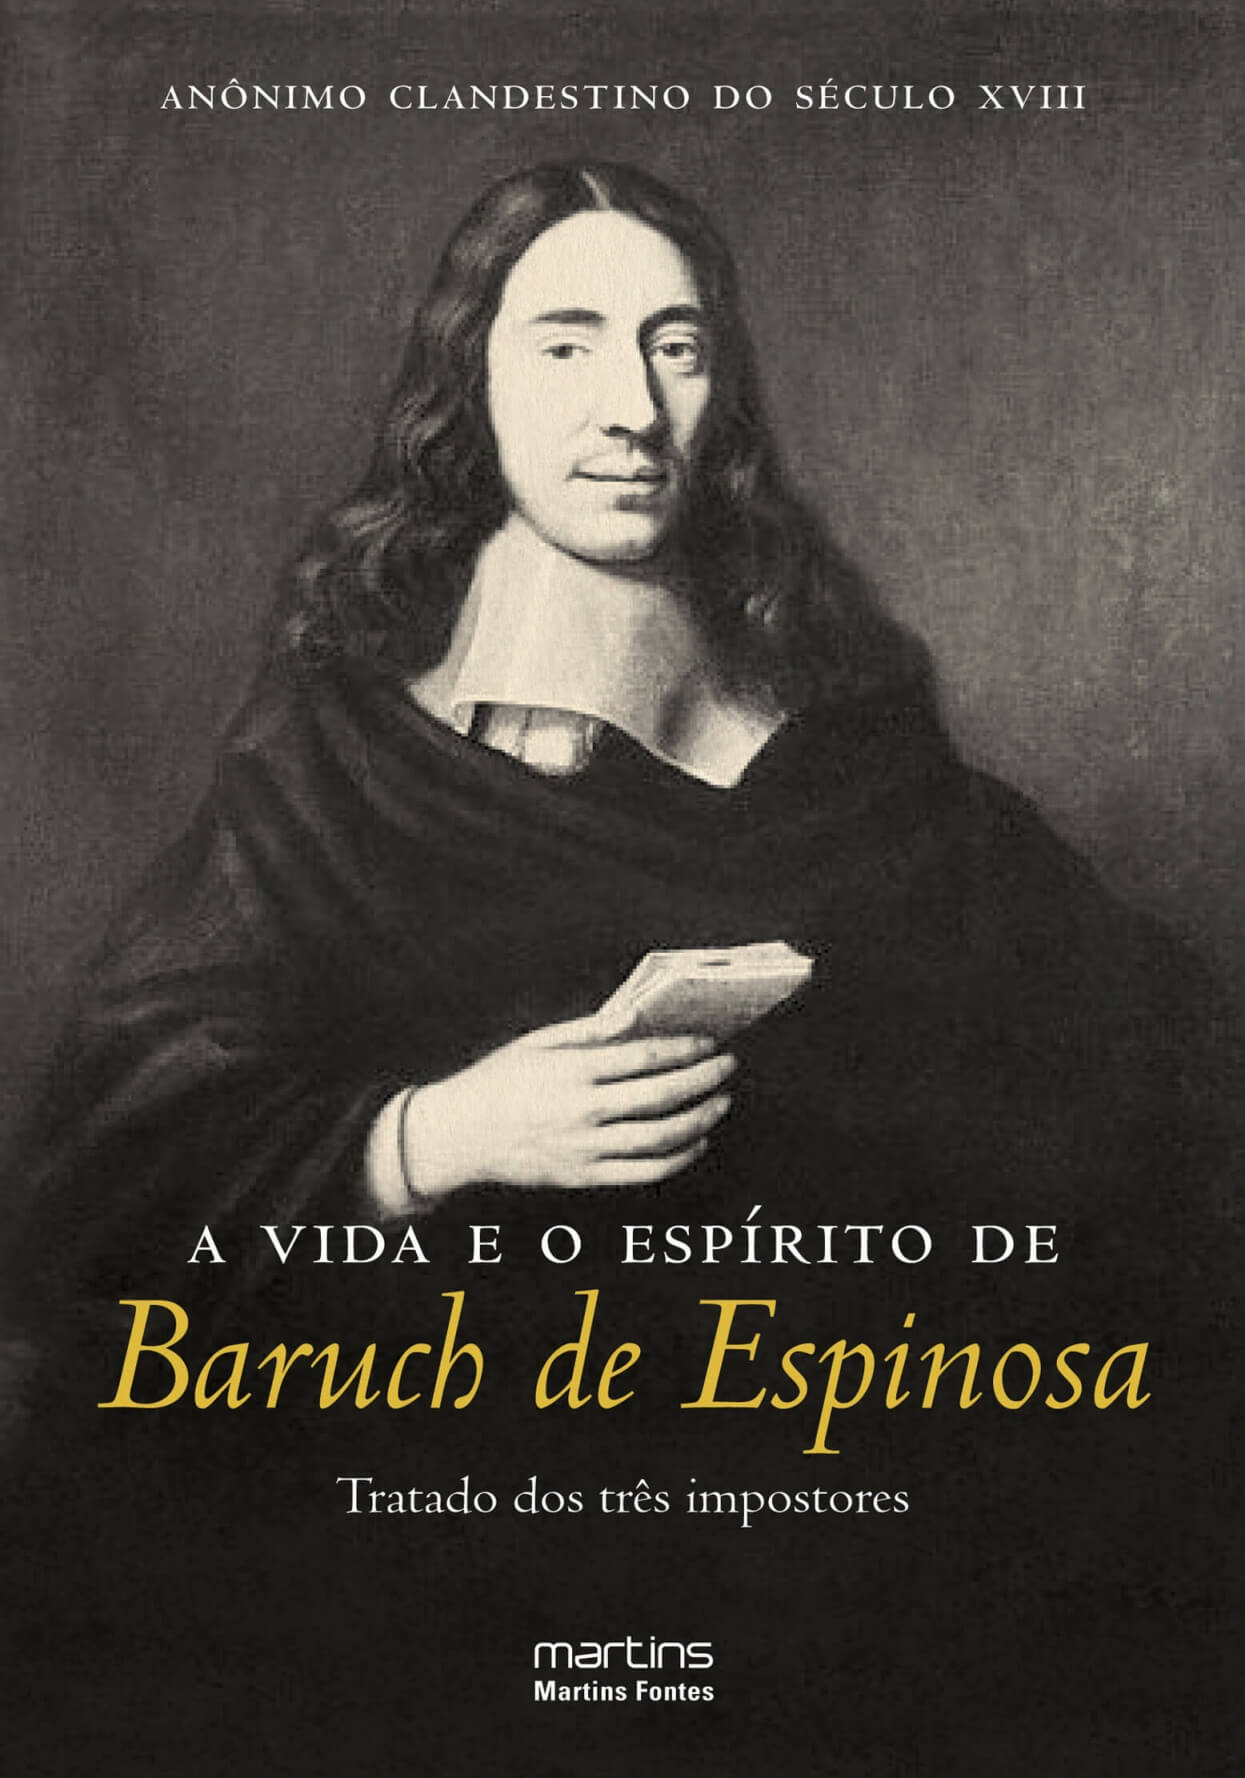 Vida e o espírito de Baruch de Espinosa, A - Tratado dos três impostores